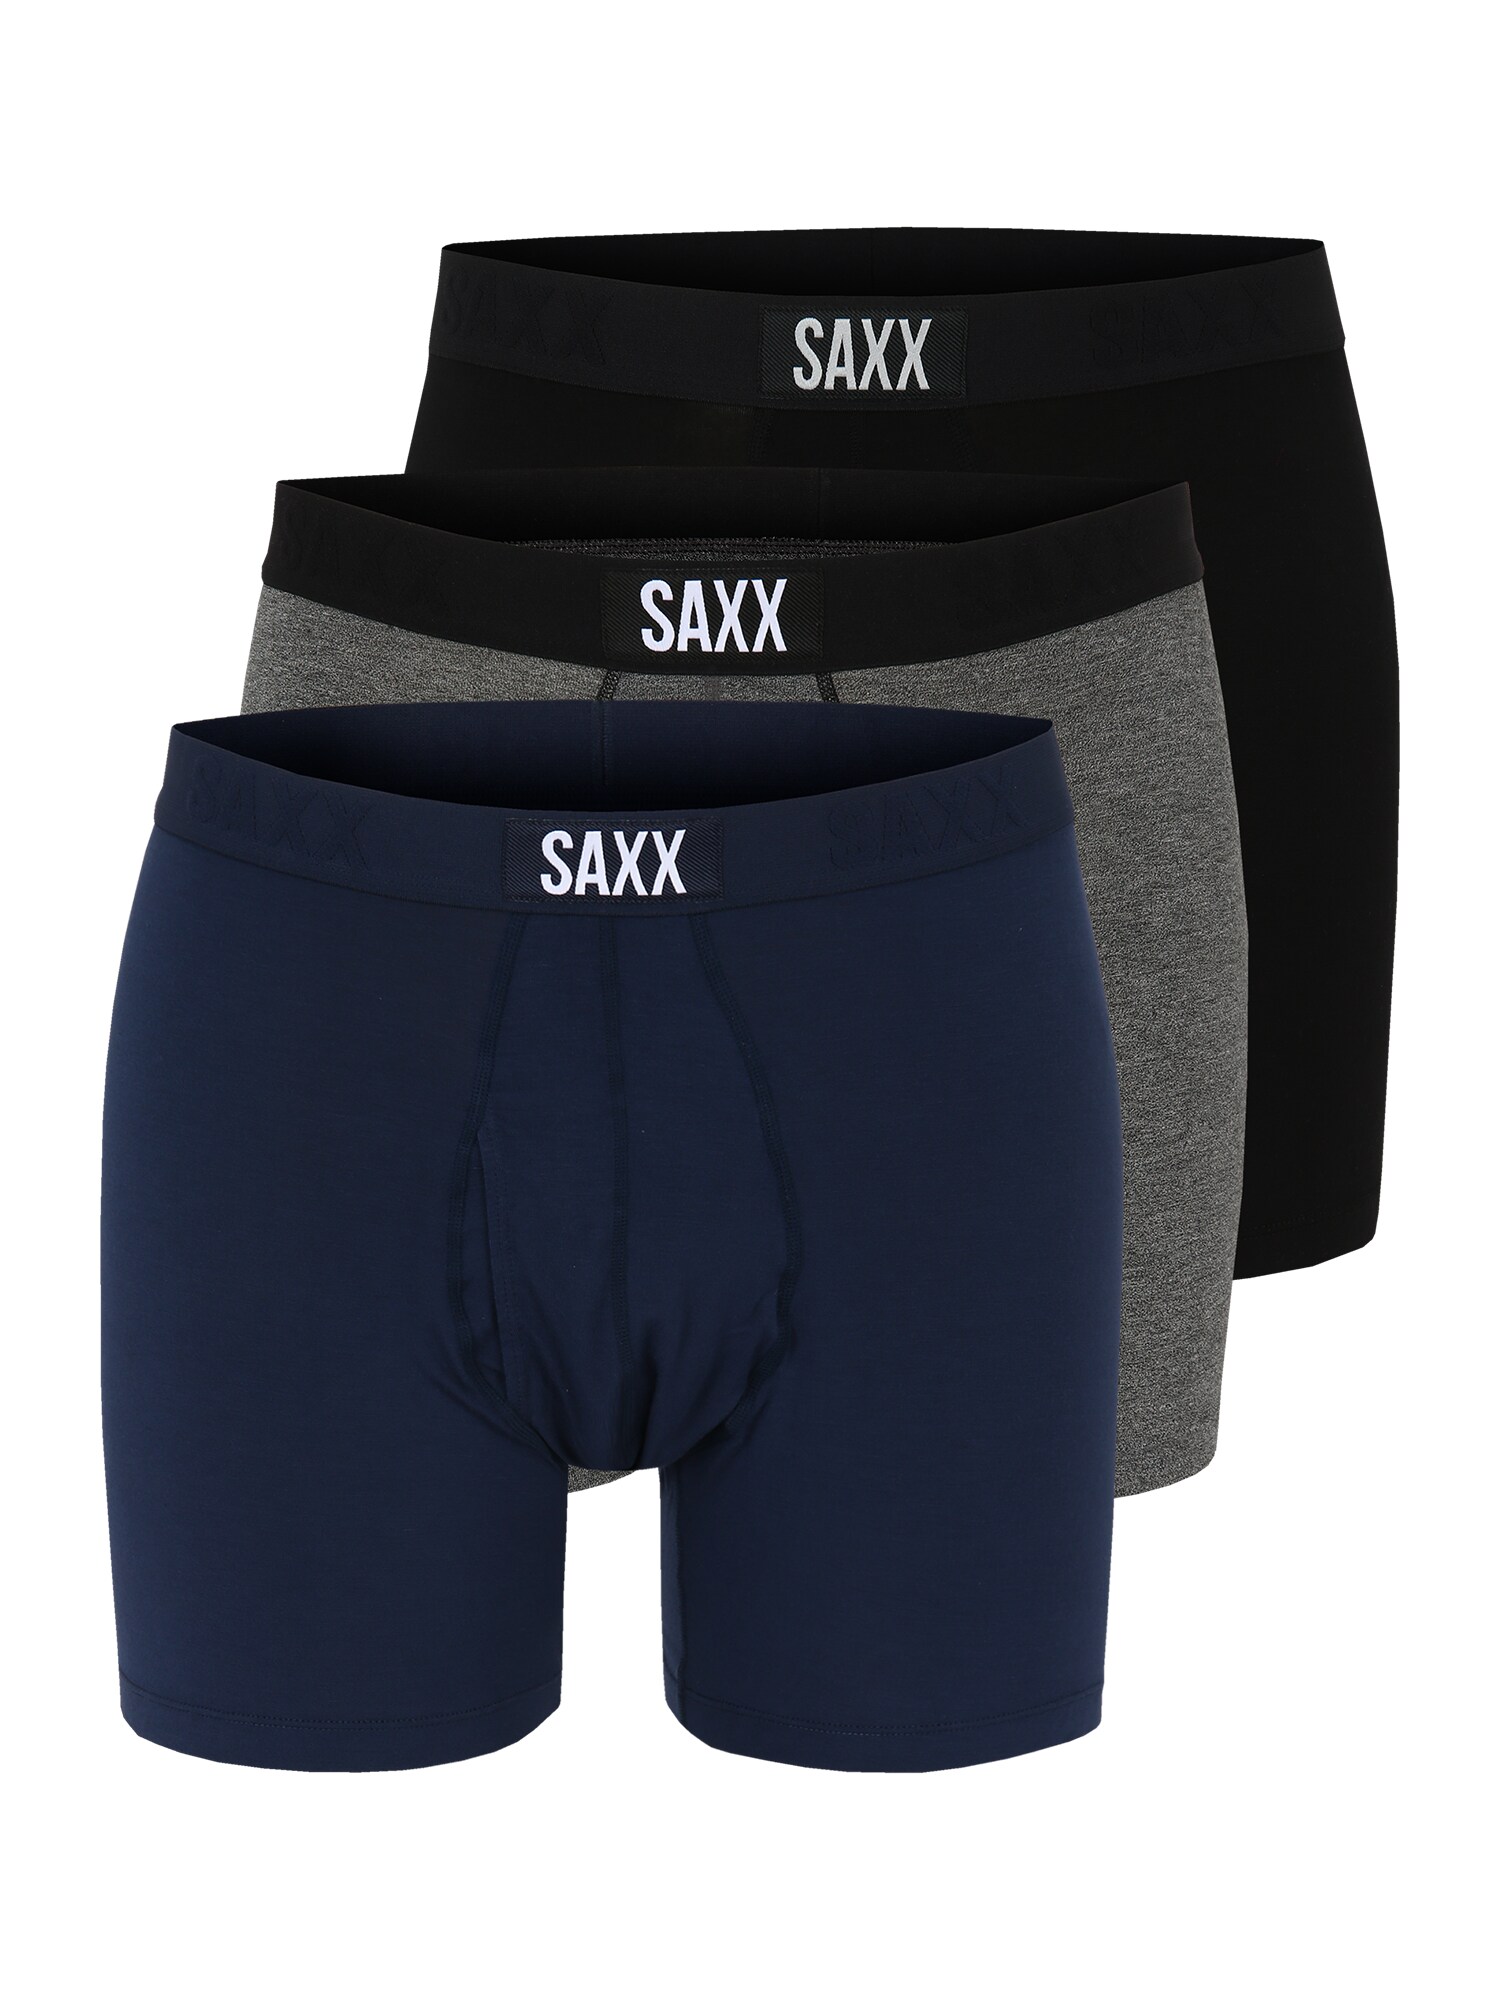 SAXX Sportinės trumpikės juoda / balta / tamsiai mėlyna / margai pilka